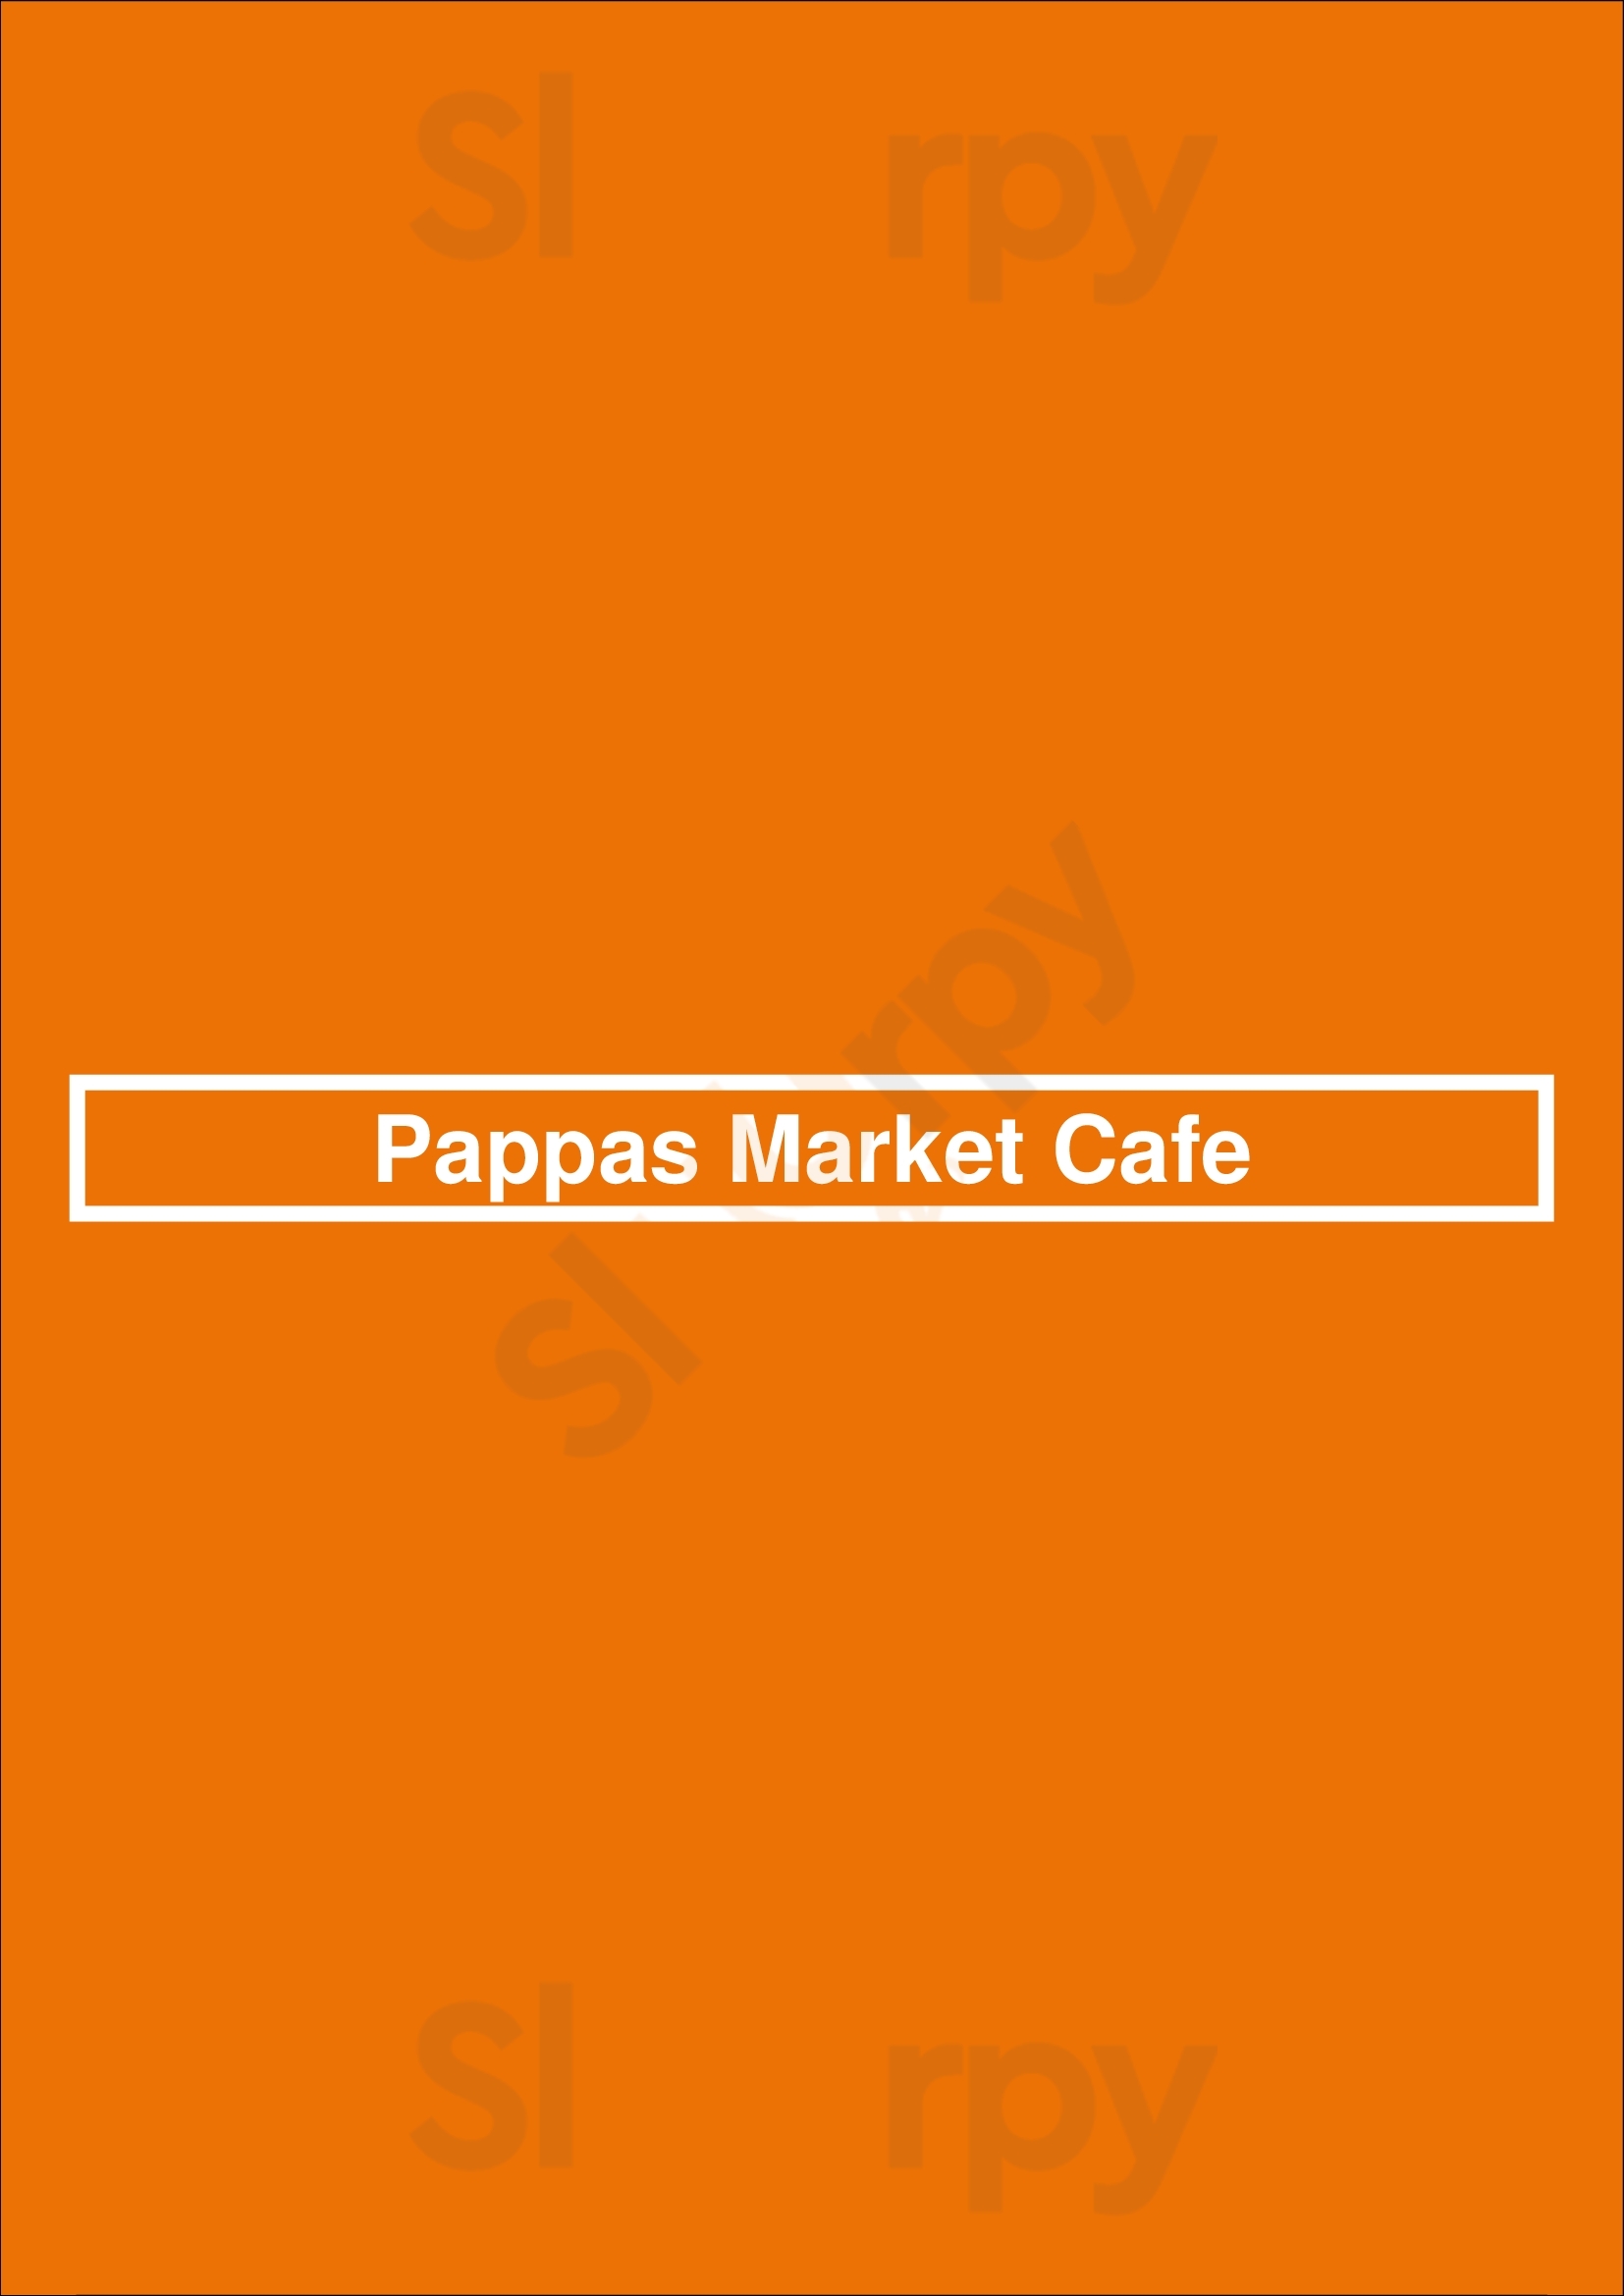 Pappas Market Cafe Tampa Menu - 1